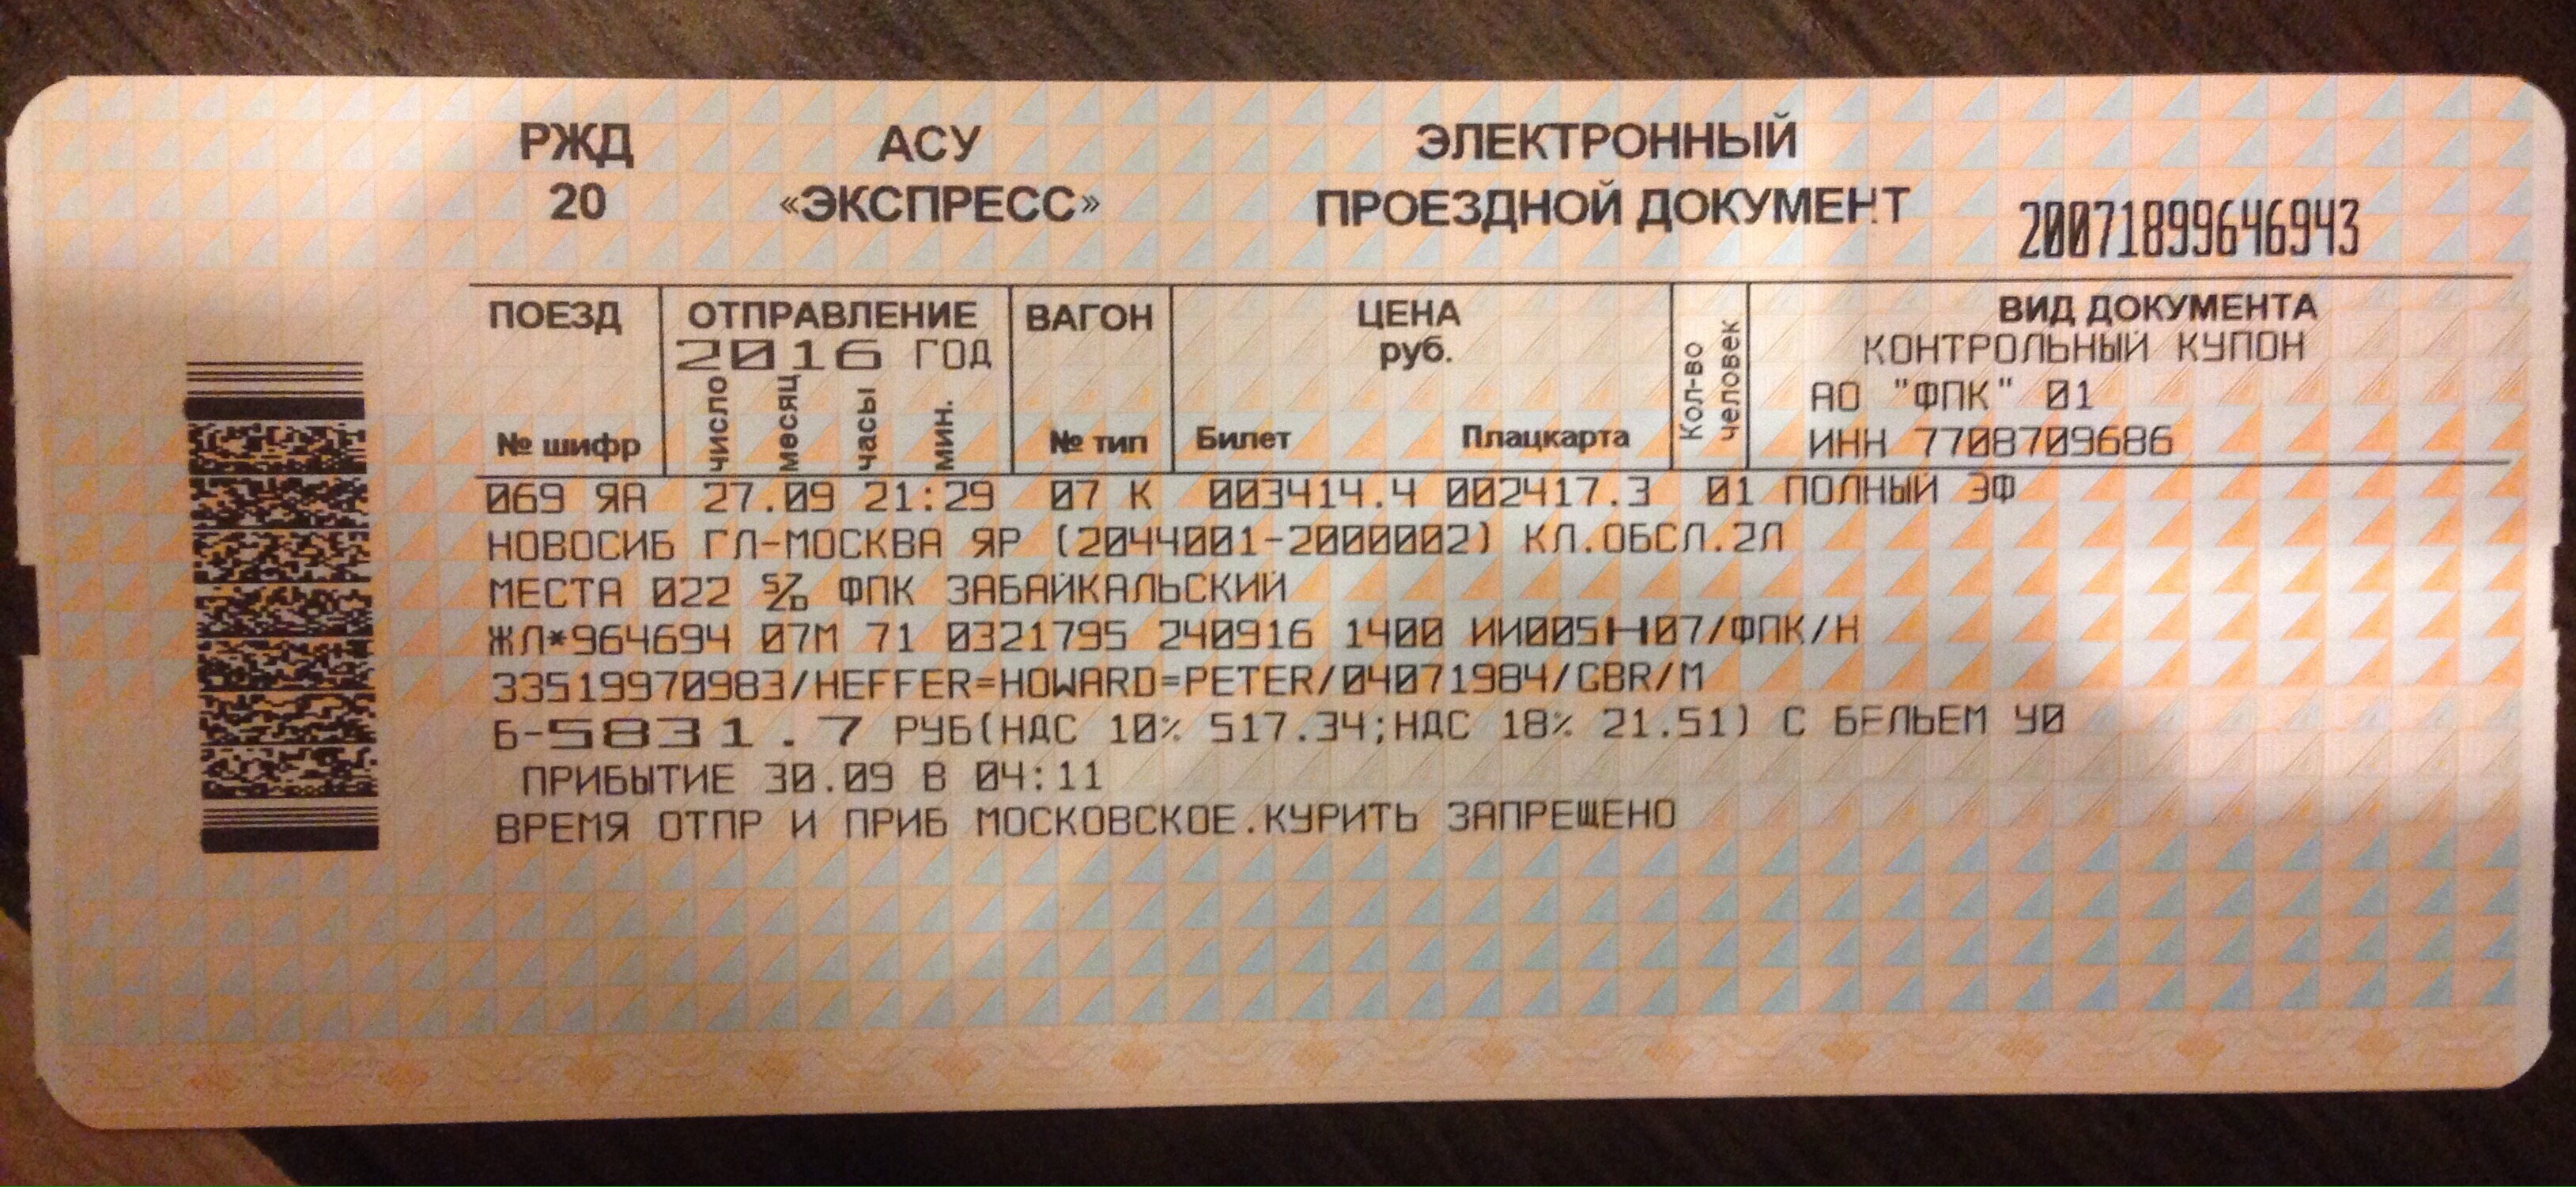 Билеты на экспресс за сколько дней. Билеты РЖД. Билет АСУ экспресс. Билеты на поезд РЖД. Электронный проездной билет на поезд.